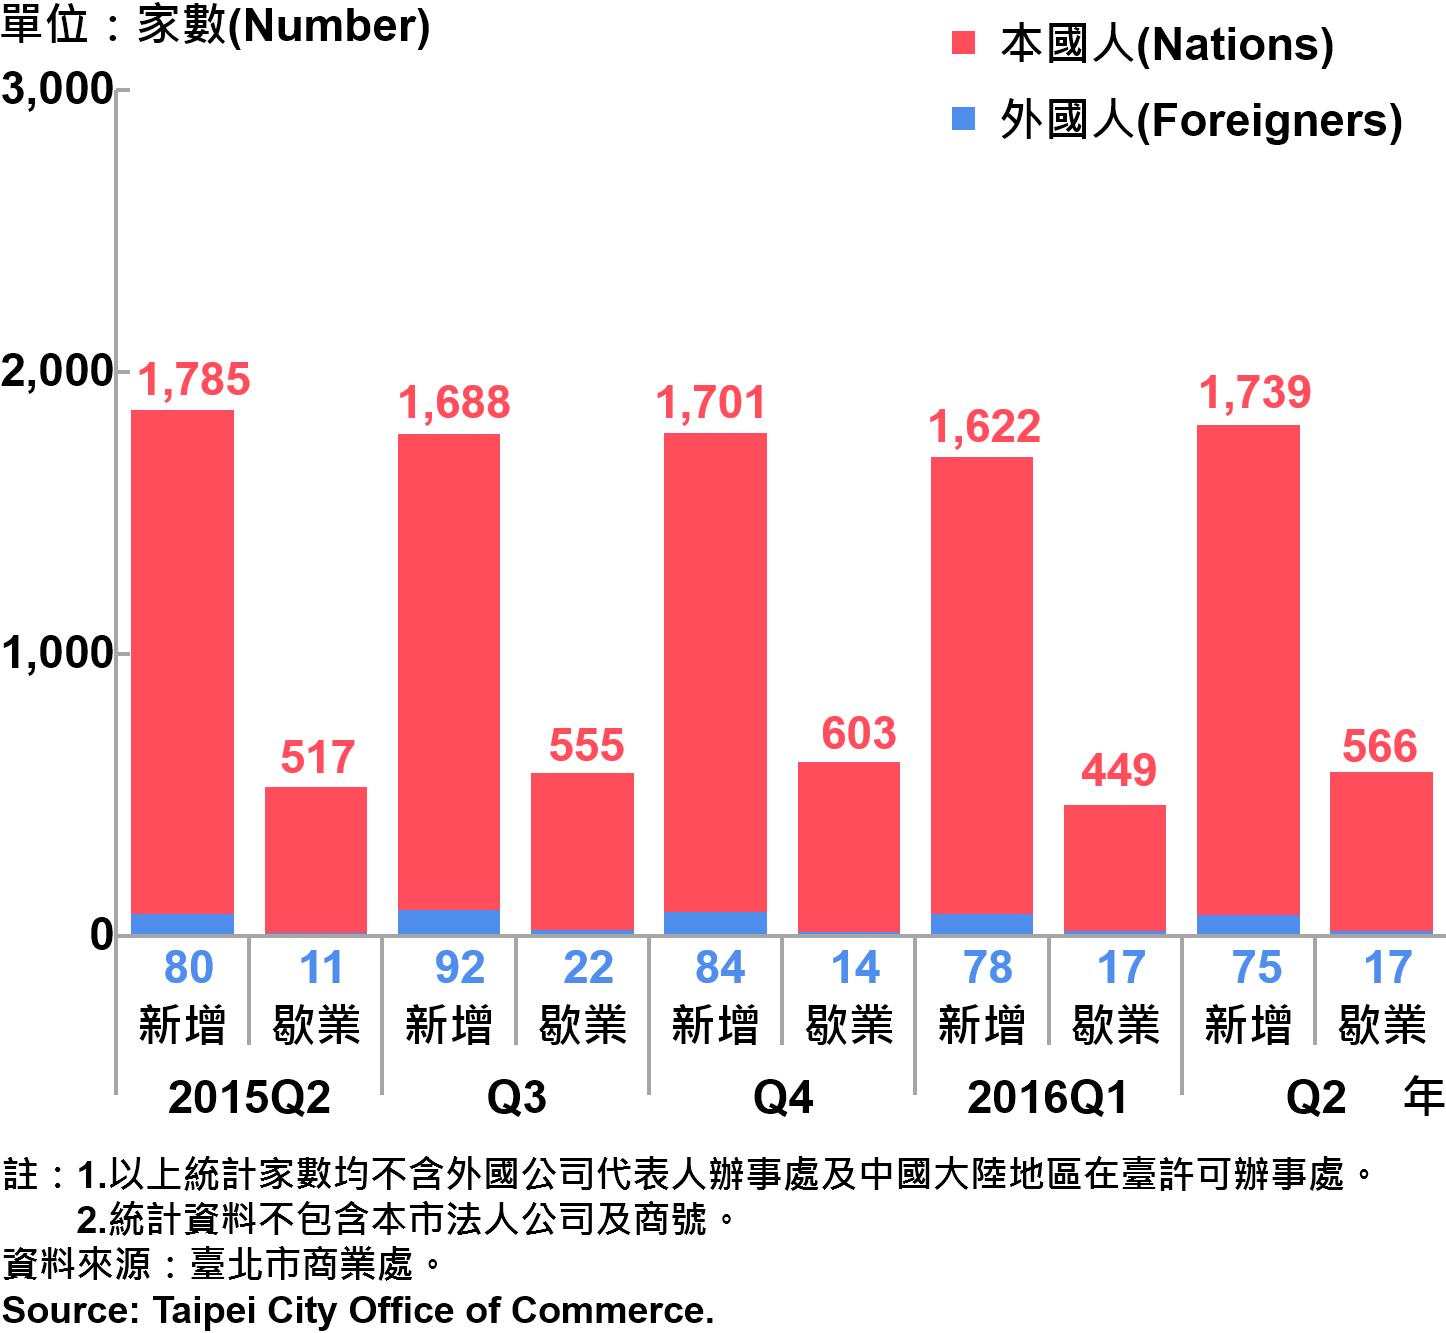 圖22、臺北市公司青創負責人為本國人與外國人分布情形—依新增及歇業家數